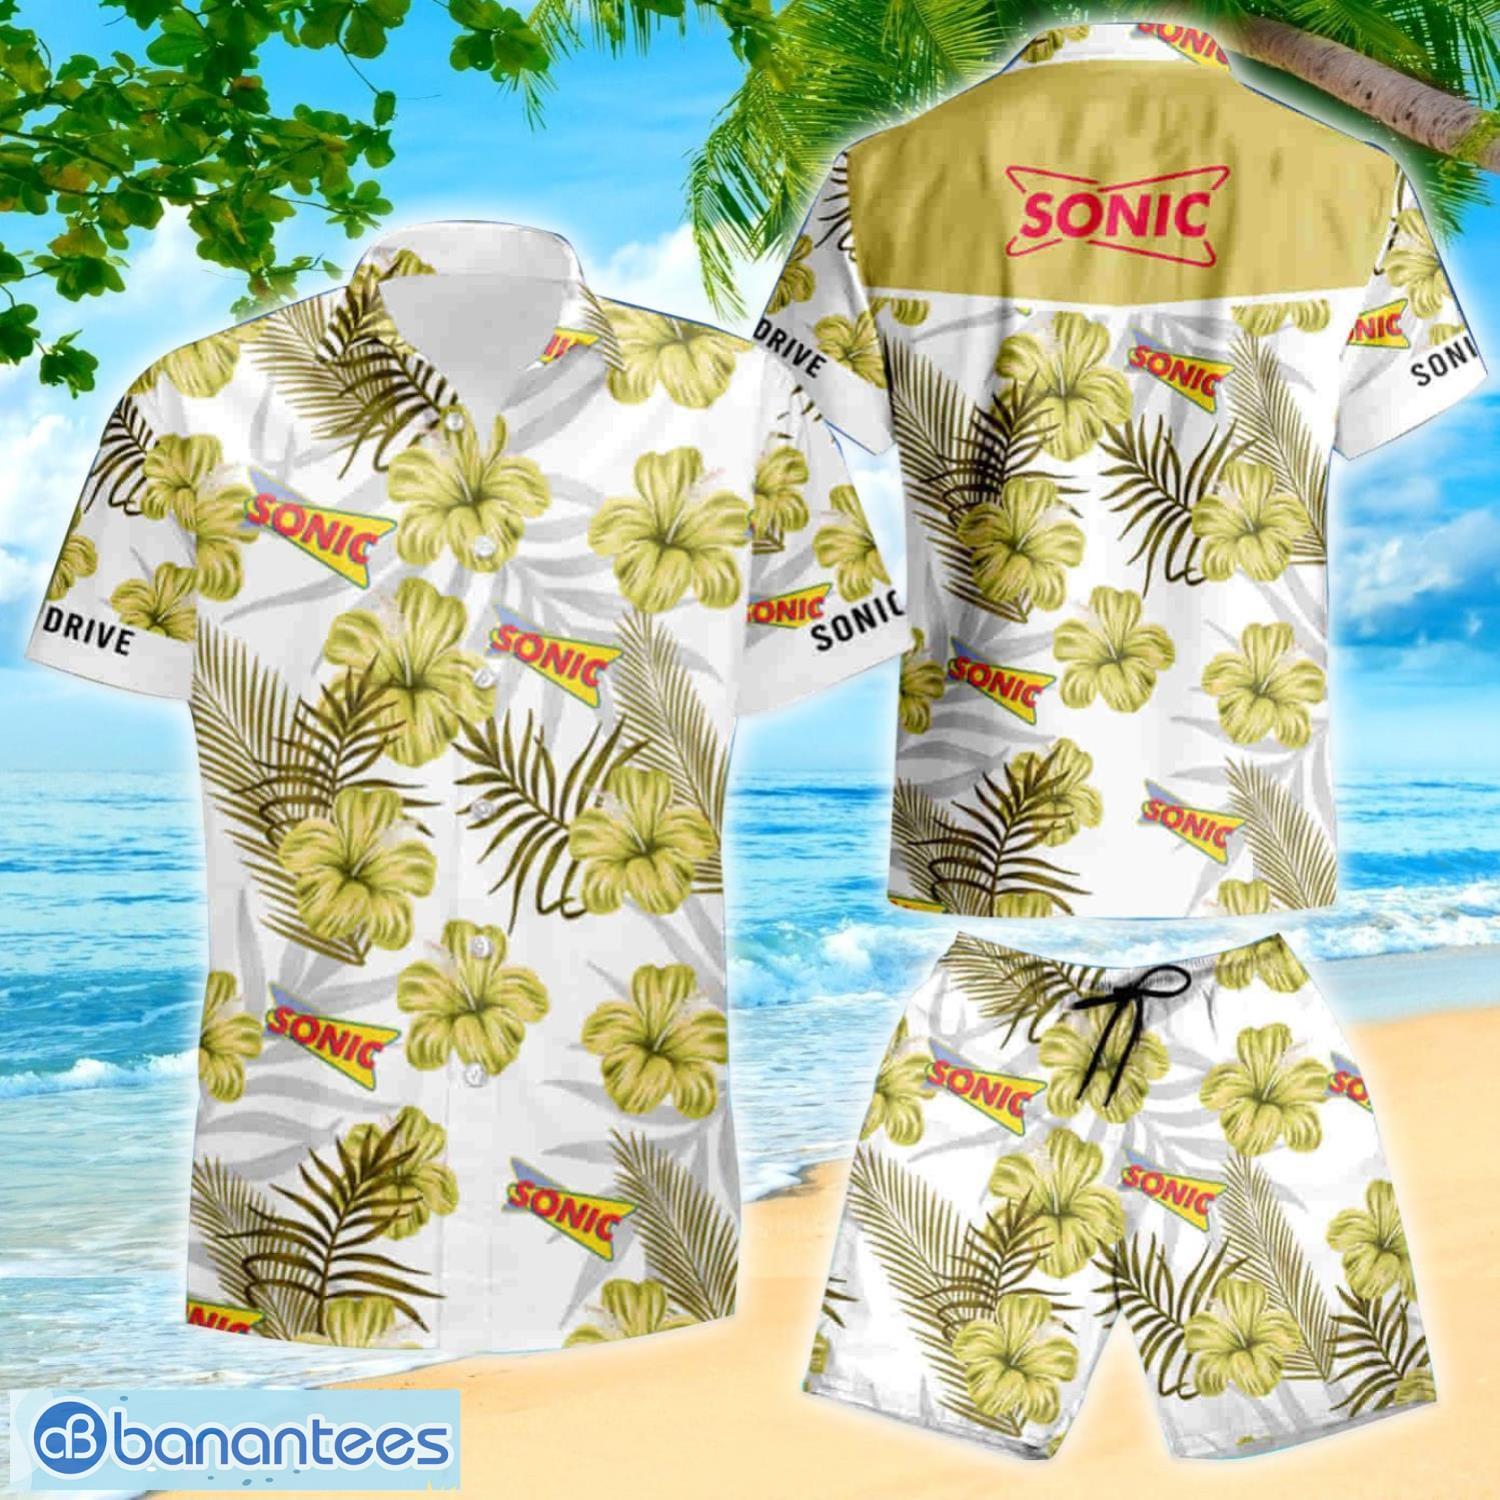 Sonic Drive-in Tommy Bahama Hawaiian Shirt And Shorts Summer Vacation Gift  - Banantees